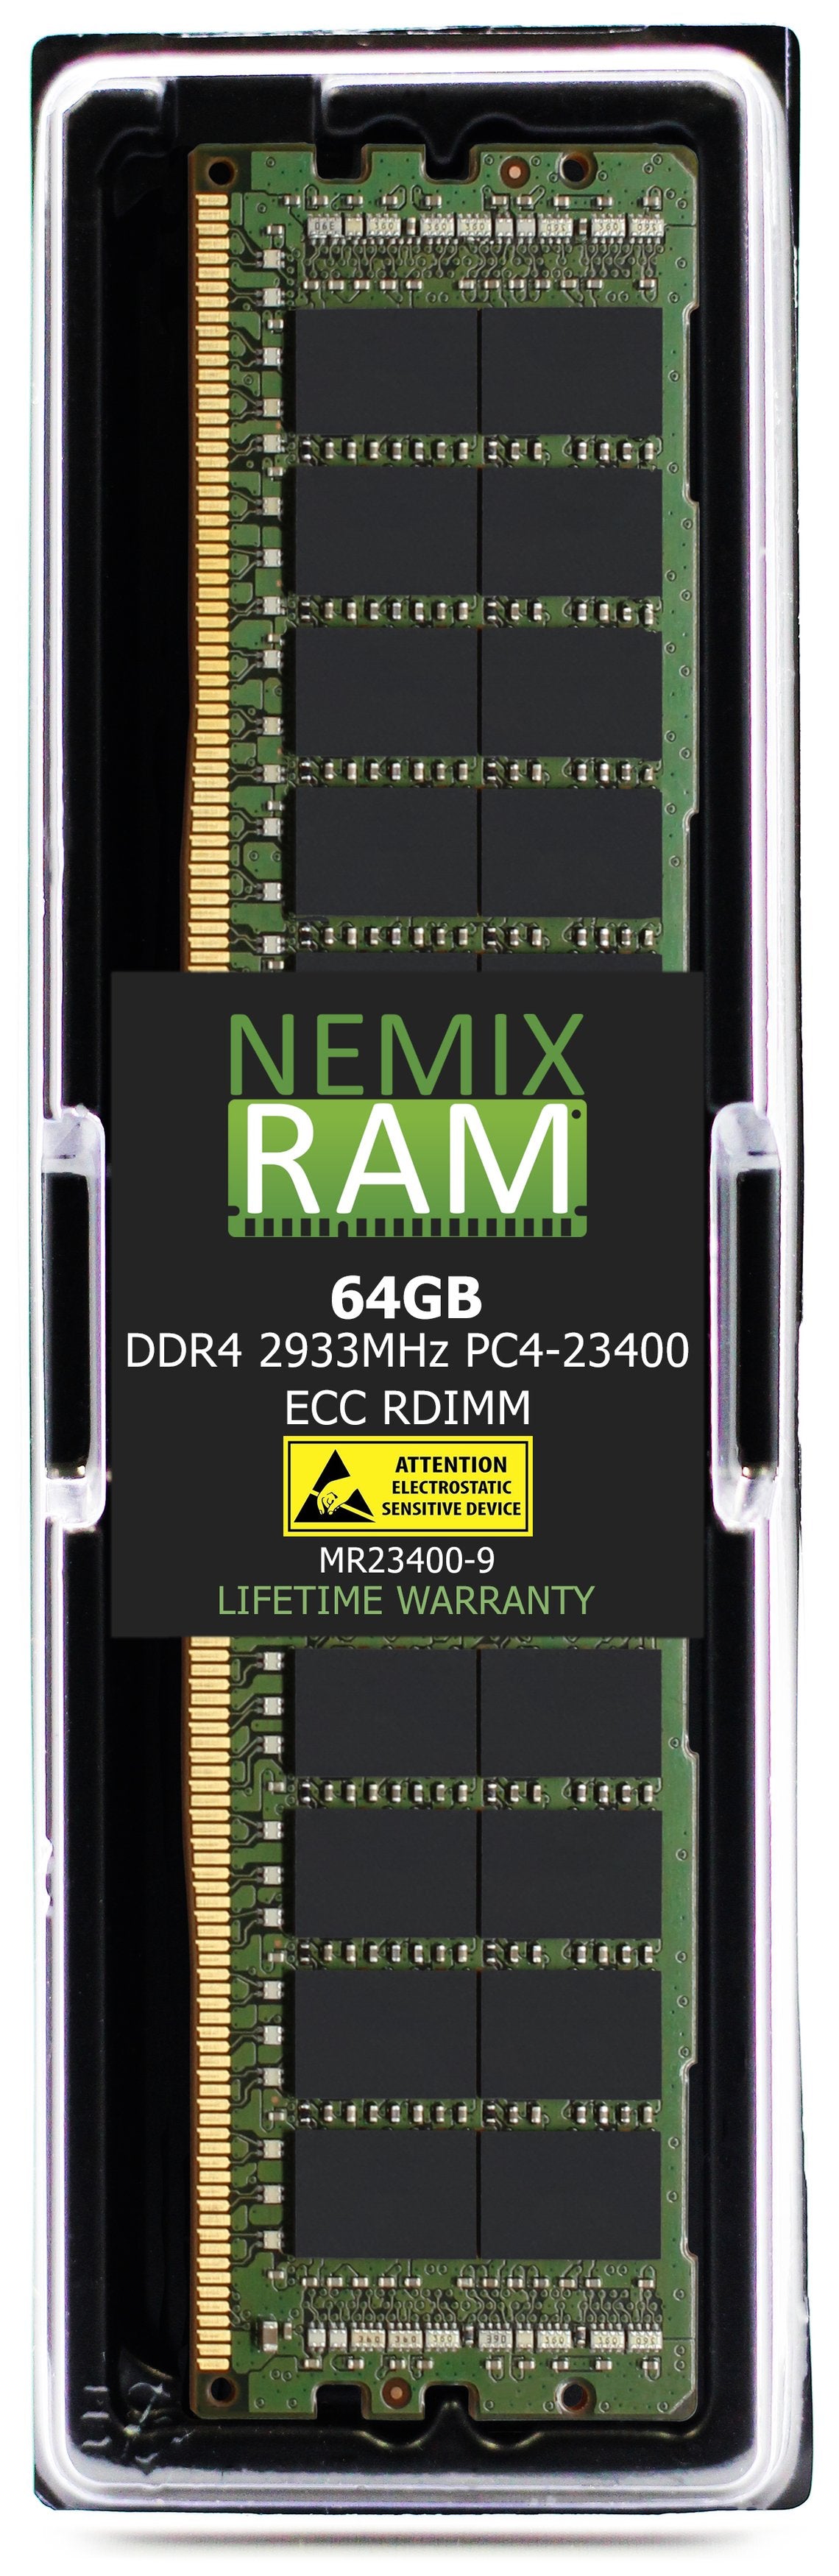 64GB DDR4 2933MHZ PC4-23400 RDIMM Compatible with Supermicro MEM-DR464L-CL01-ER29